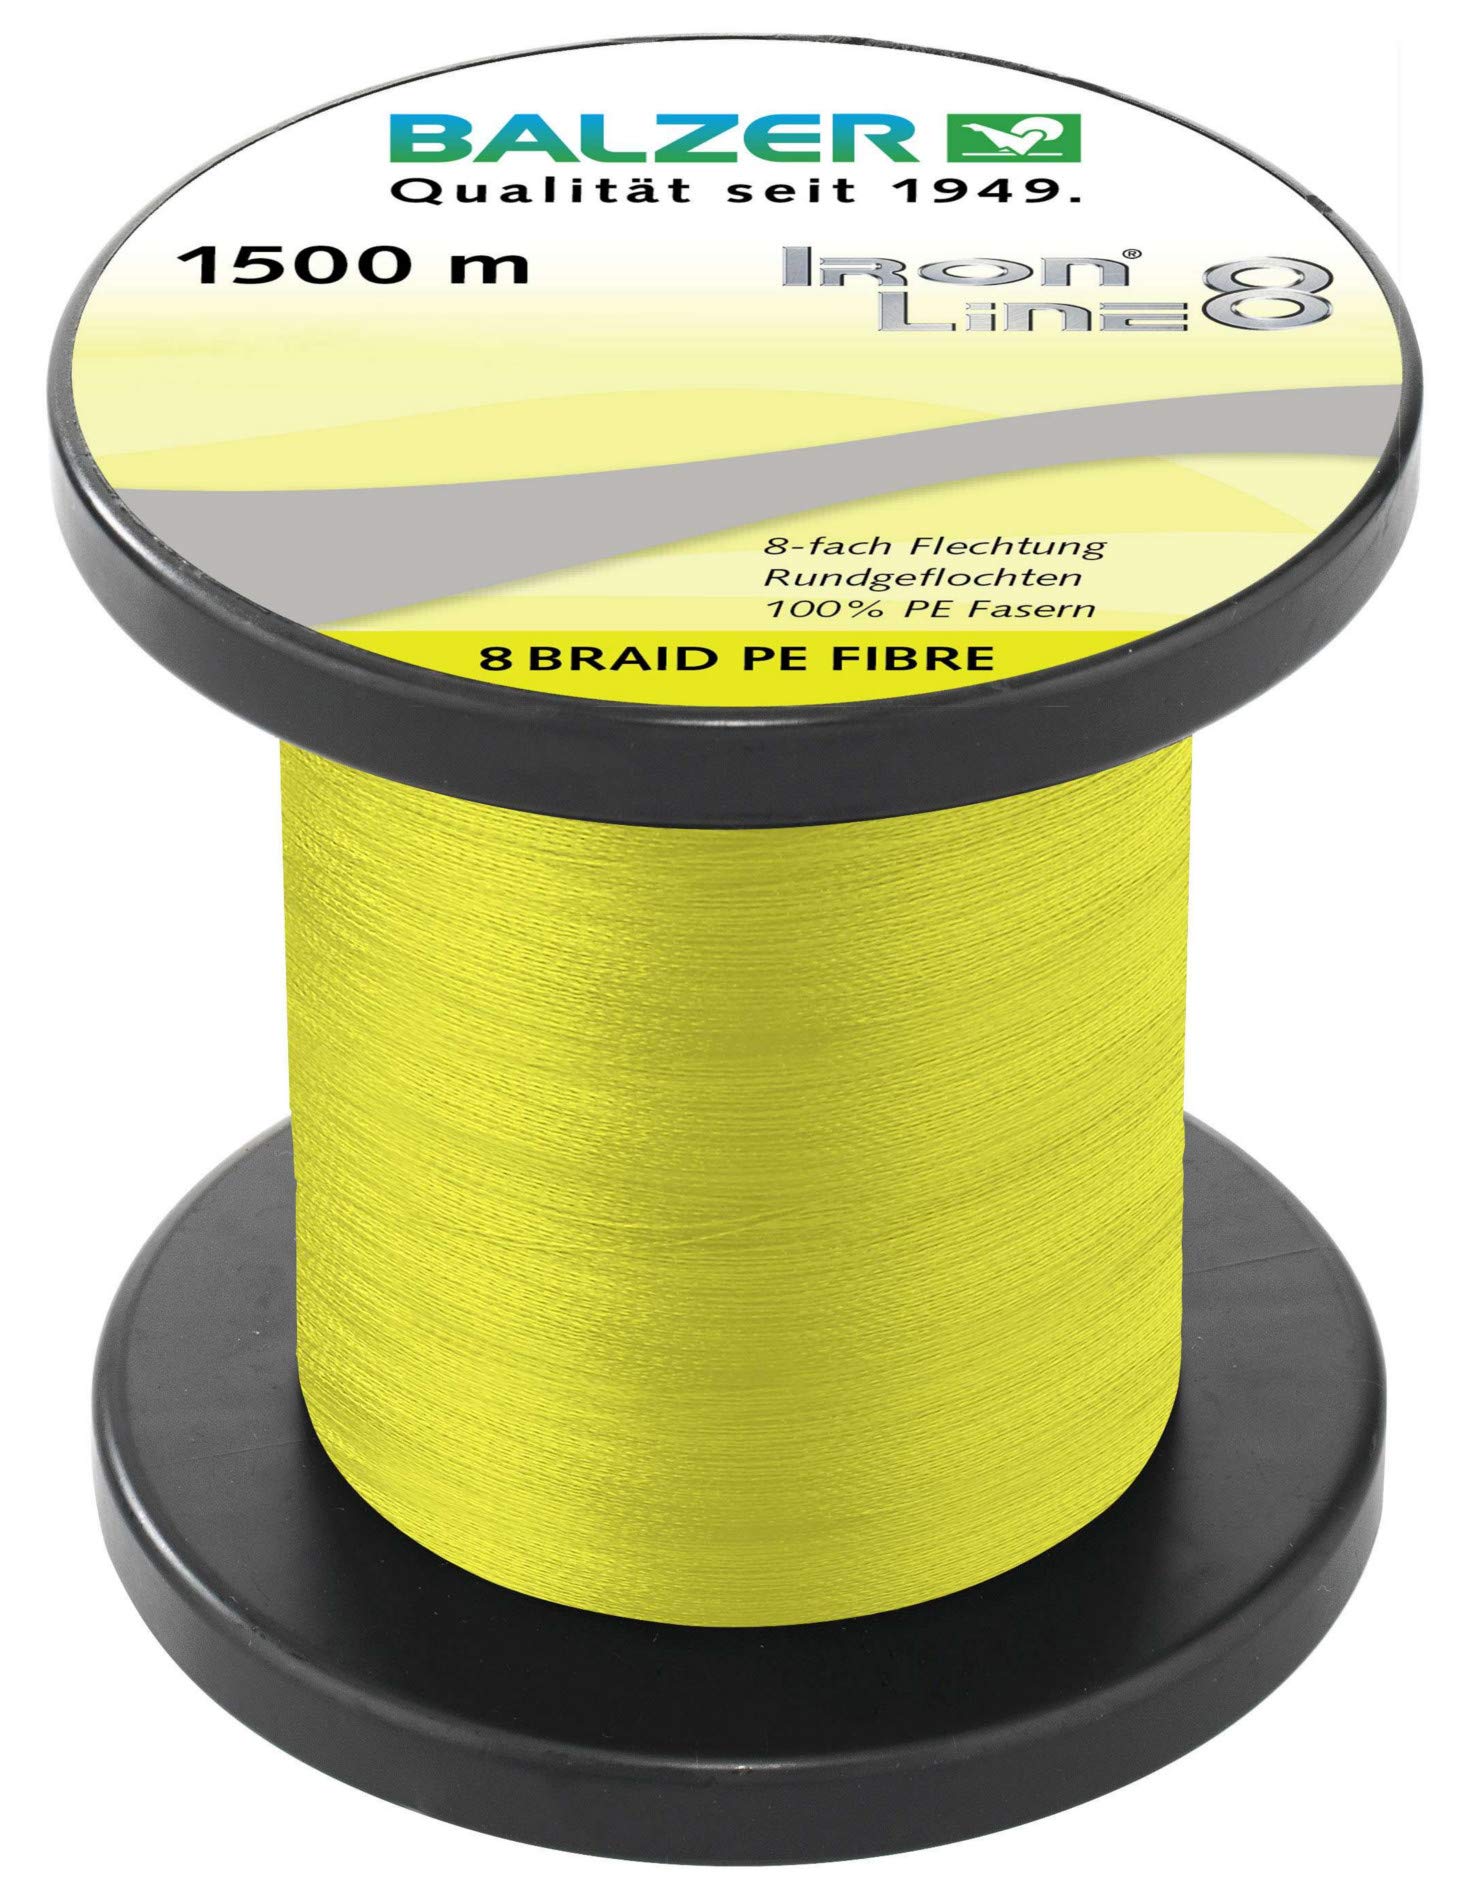 Balzer Iron Line 8-1500m geflochtene Schnur zum Spinnfischen, Farbe:Gelb, Durchmesser/Tragkraft:0.16mm / 11.6kg